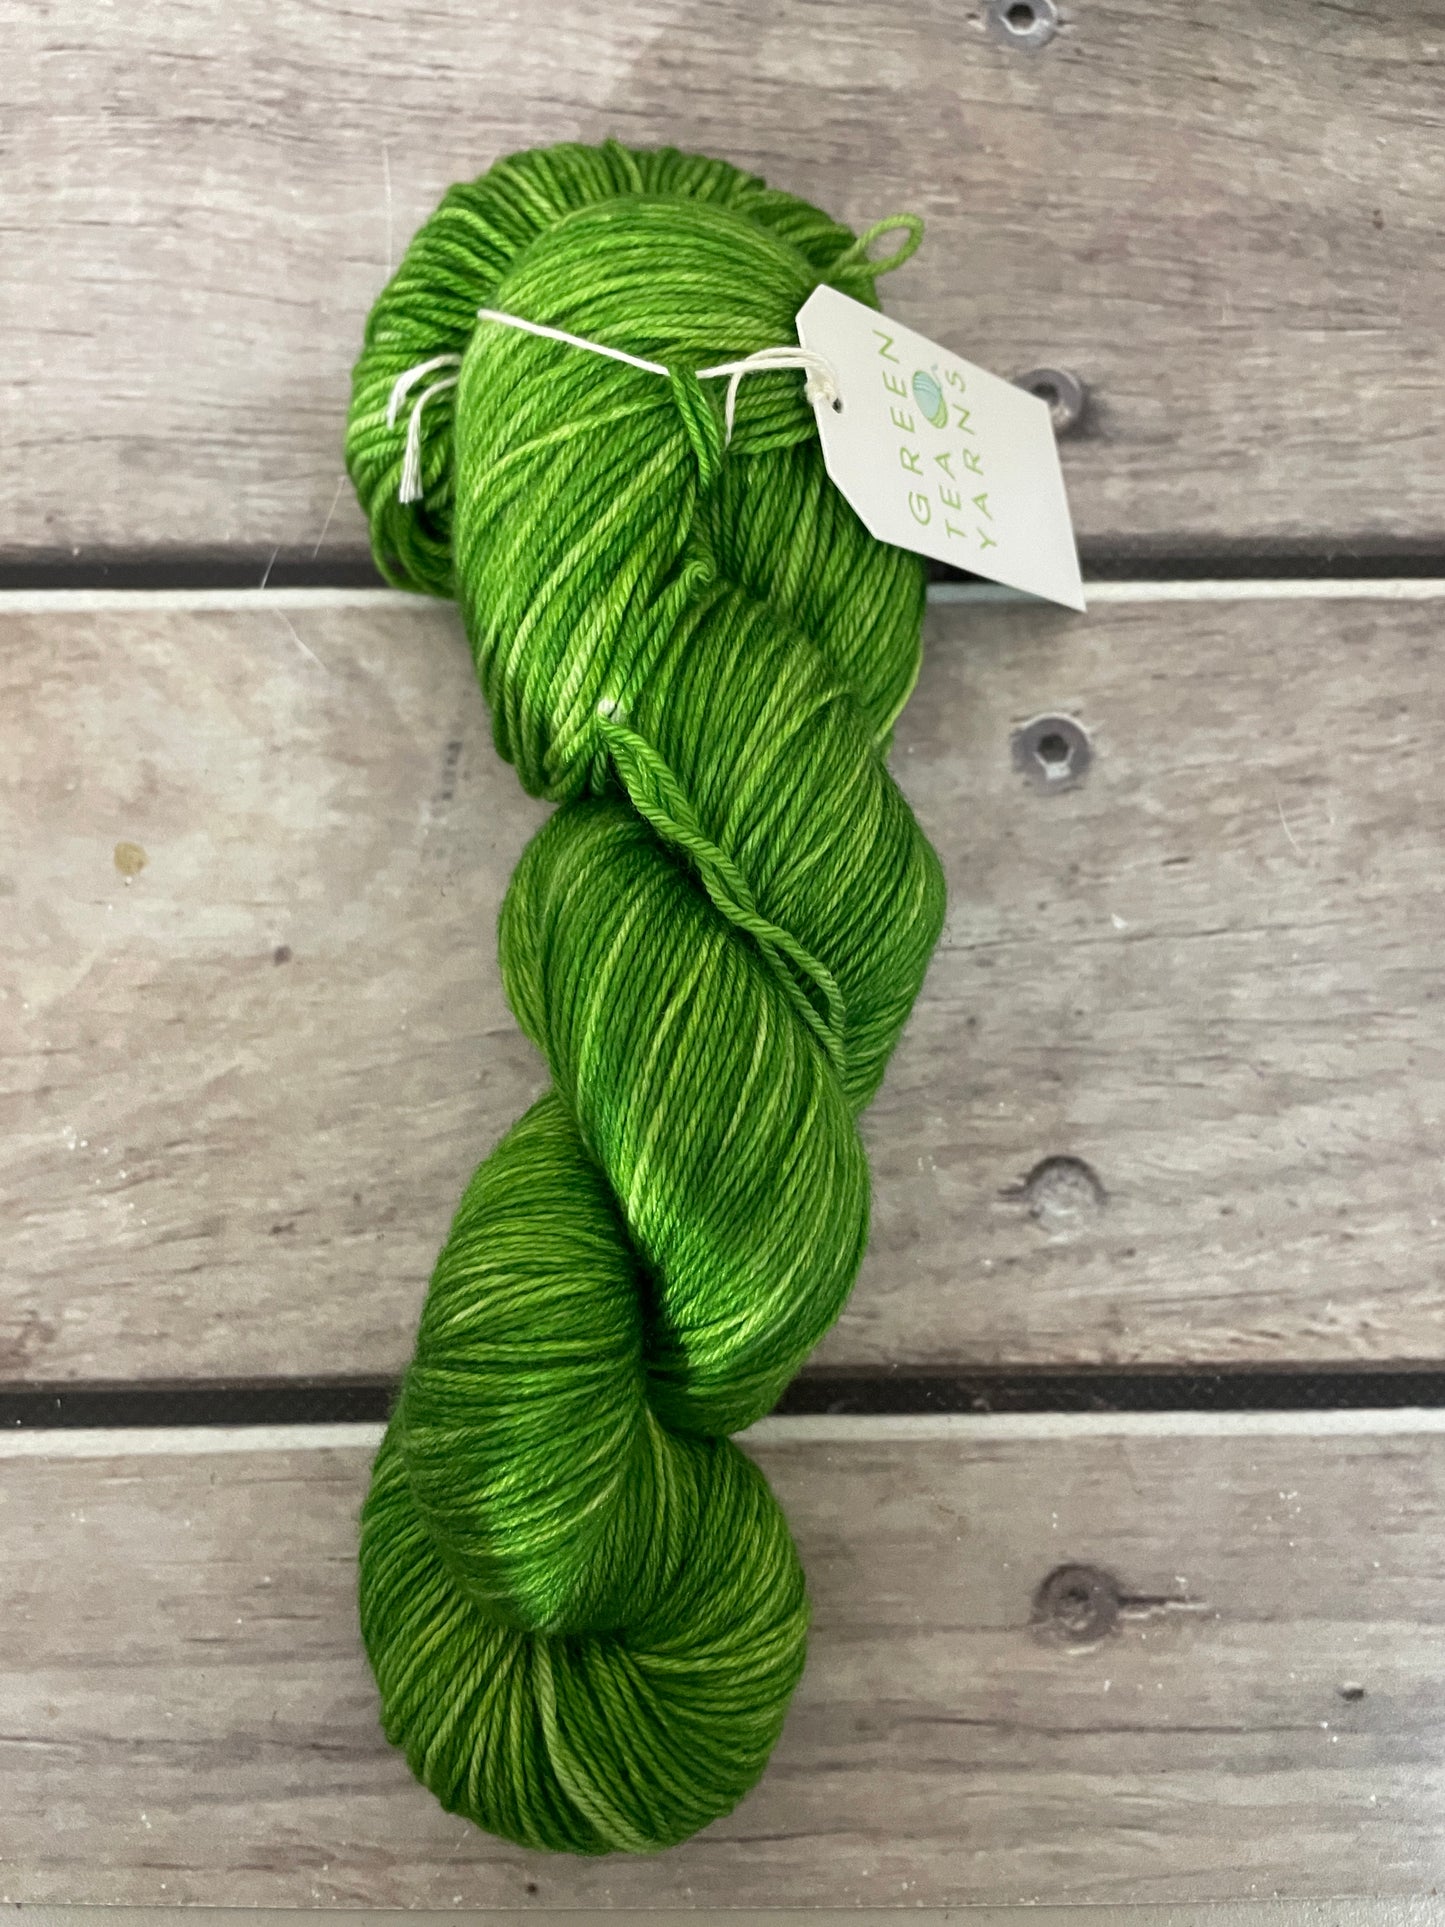 Frog Green - sock yarn in merino and nylon - Darjeeling